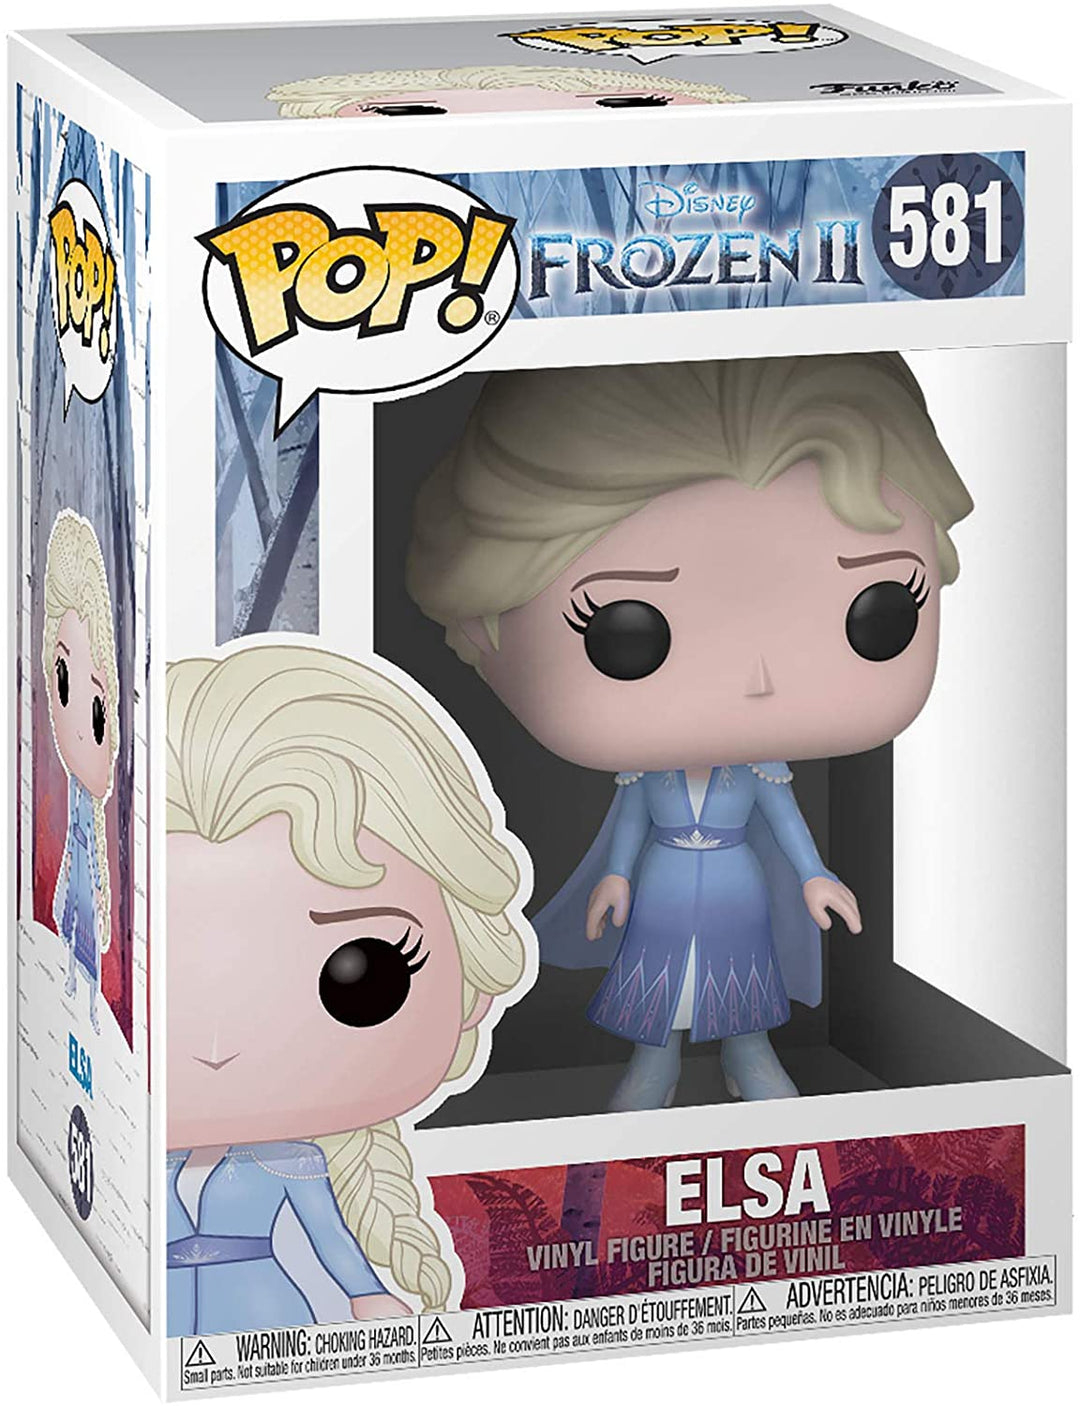 Funko Pop Disney: Frozen 2 - Elsa Vinyl Figure